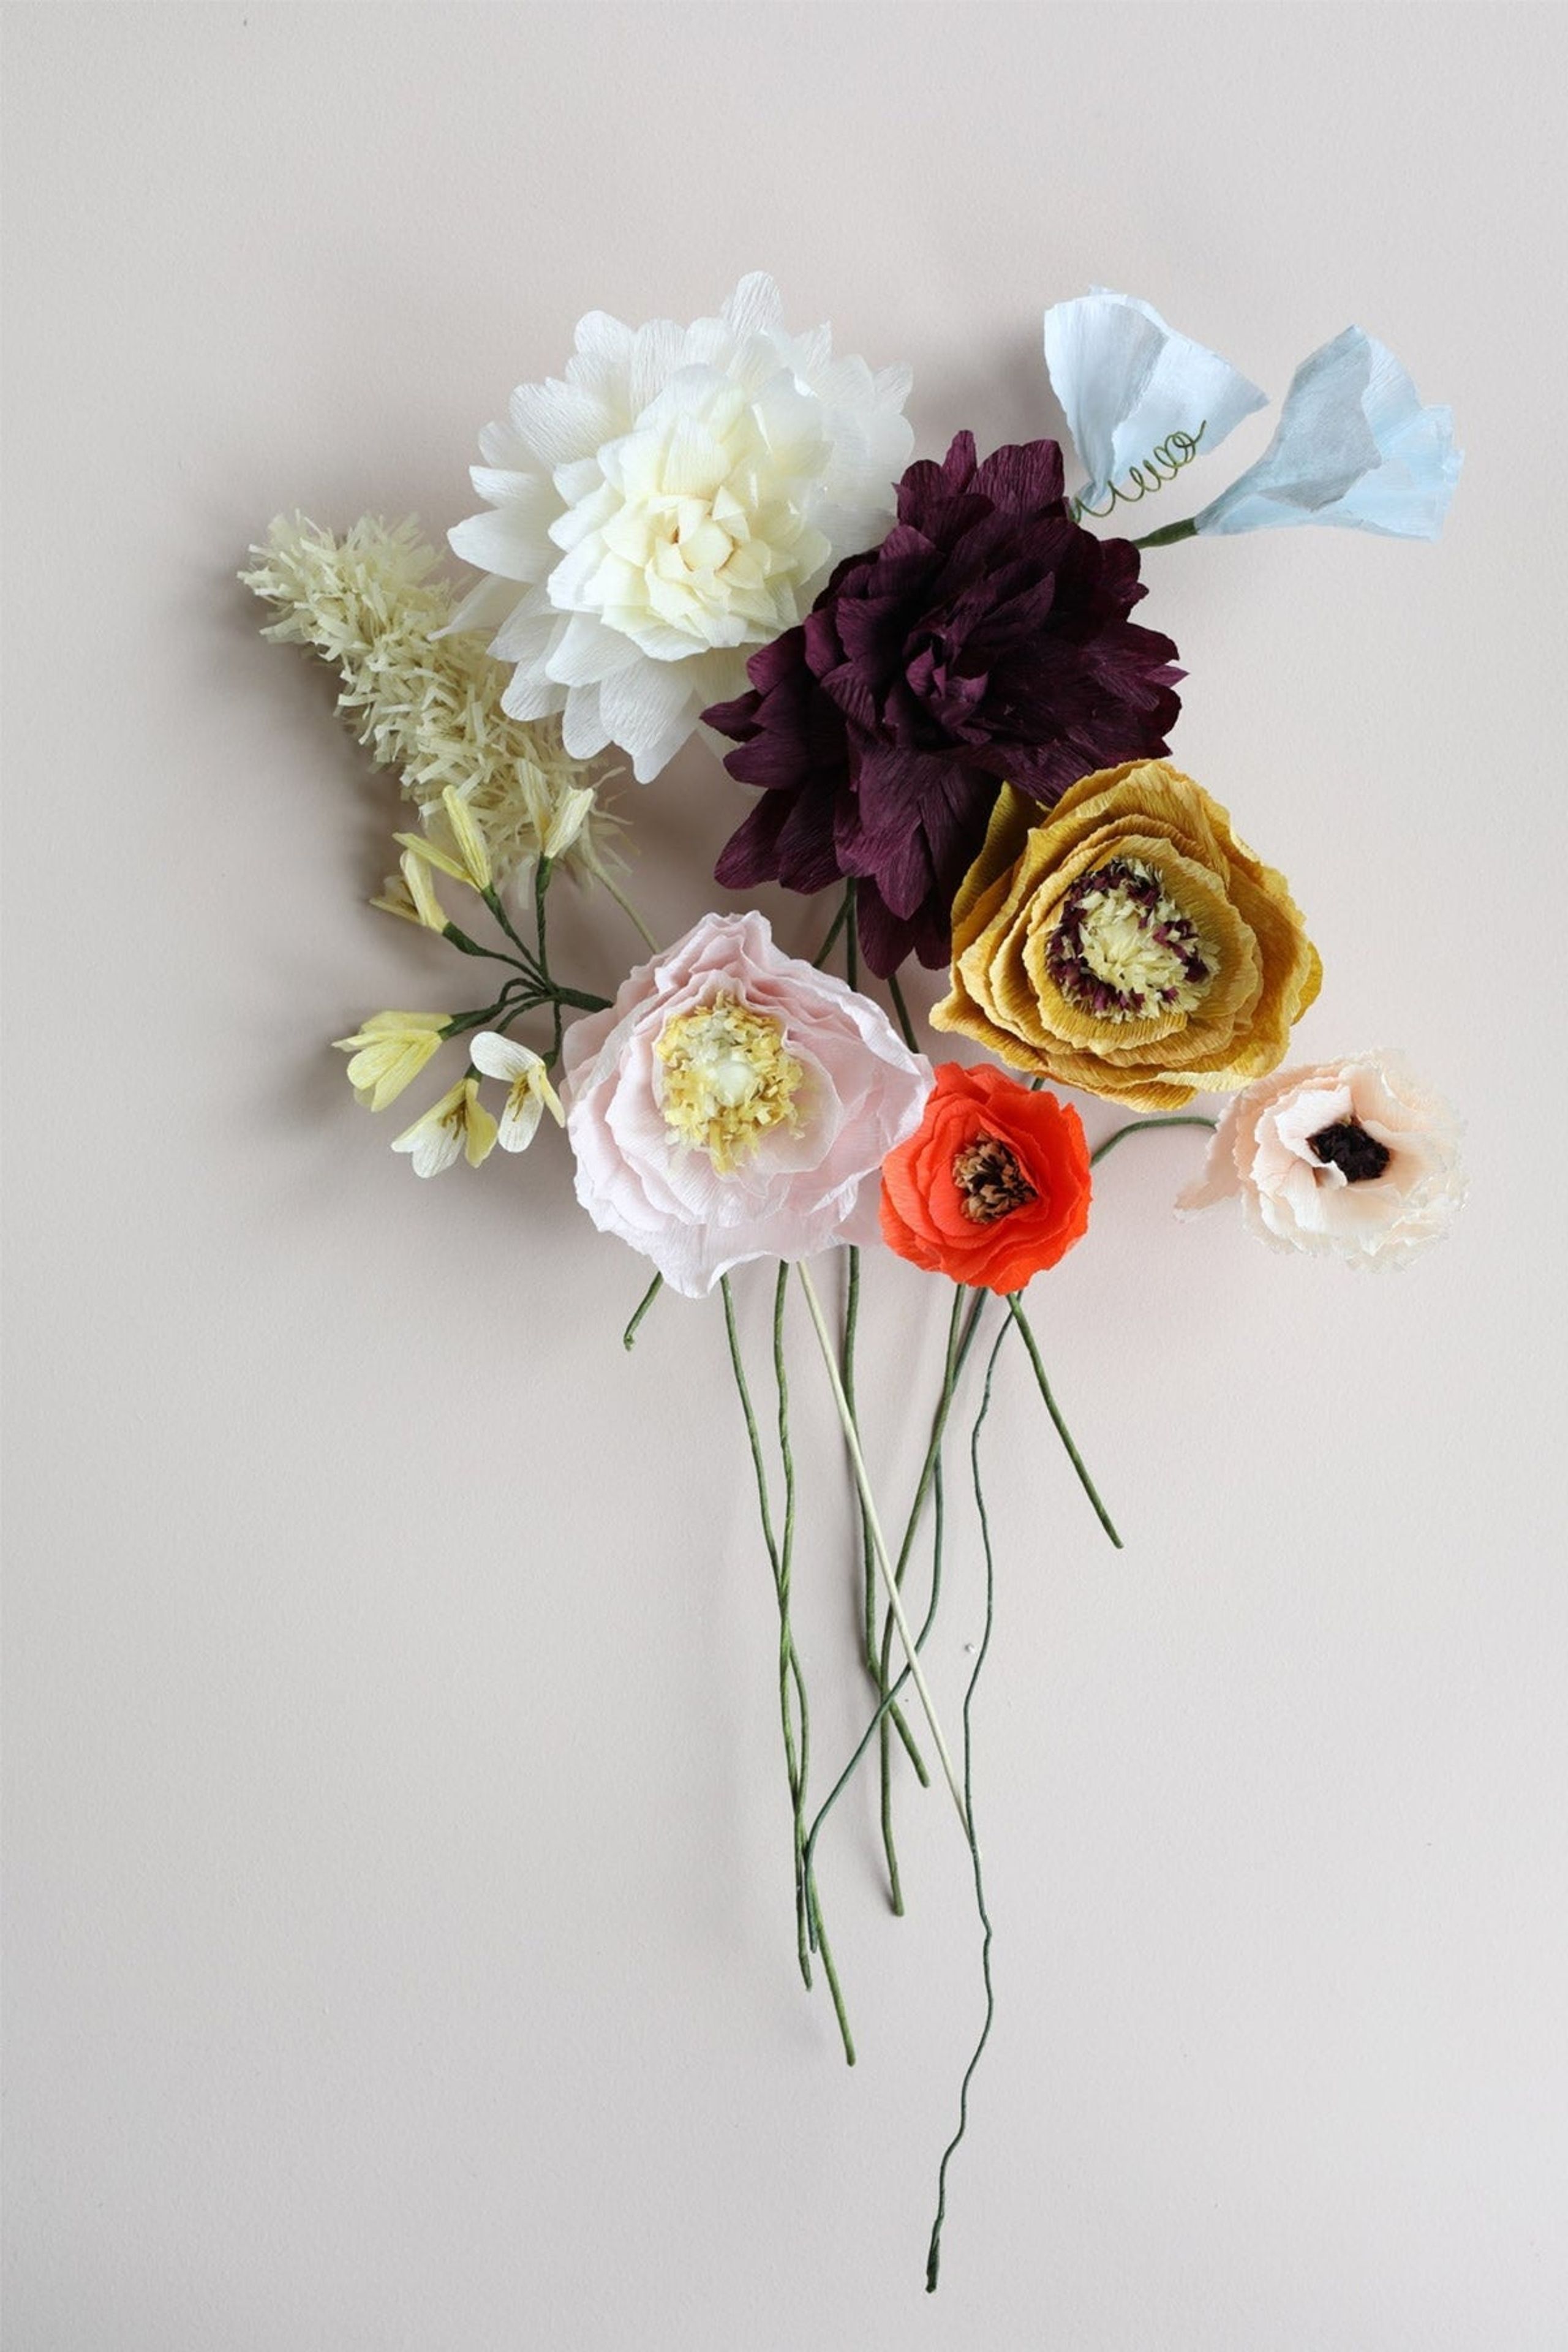 Studio About - Papirblomster - Paper Flowers Bouquet - Surprise9